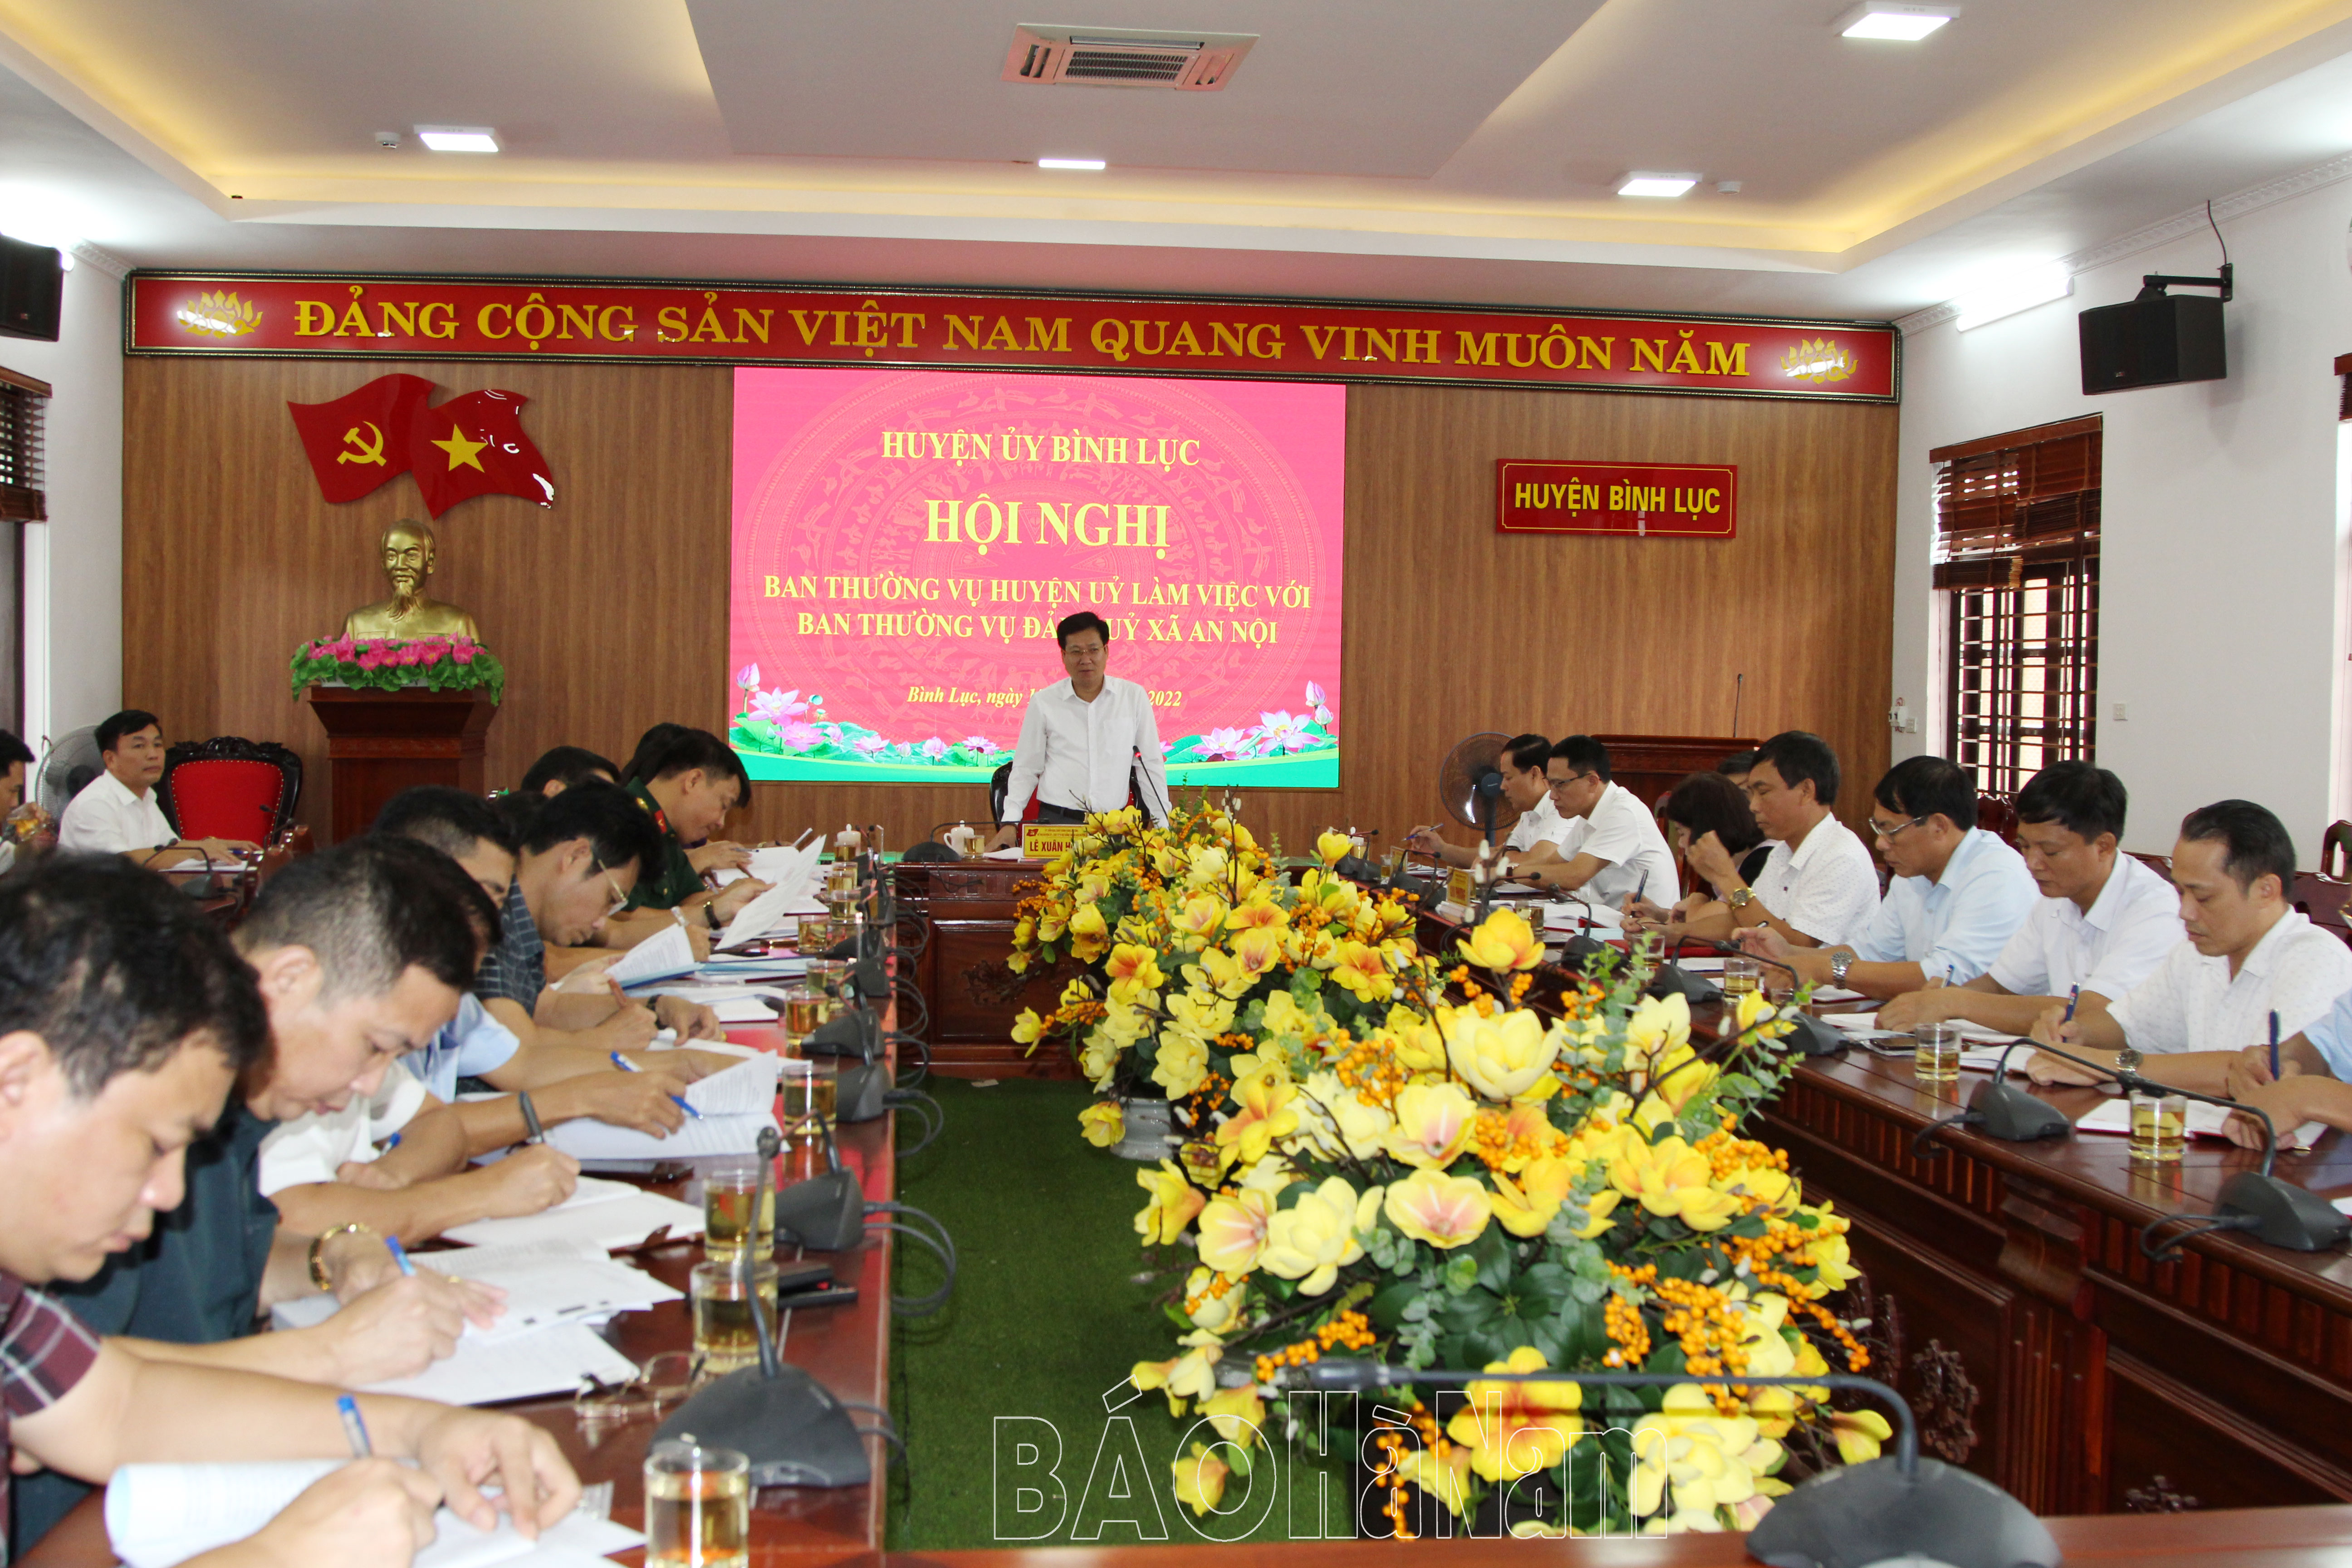 BTV Huyện ủy Bình Lục làm việc với BTV Đảng ủy xã An Nội về việc thực hiện nghị quyết đại hội Đảng các cấp